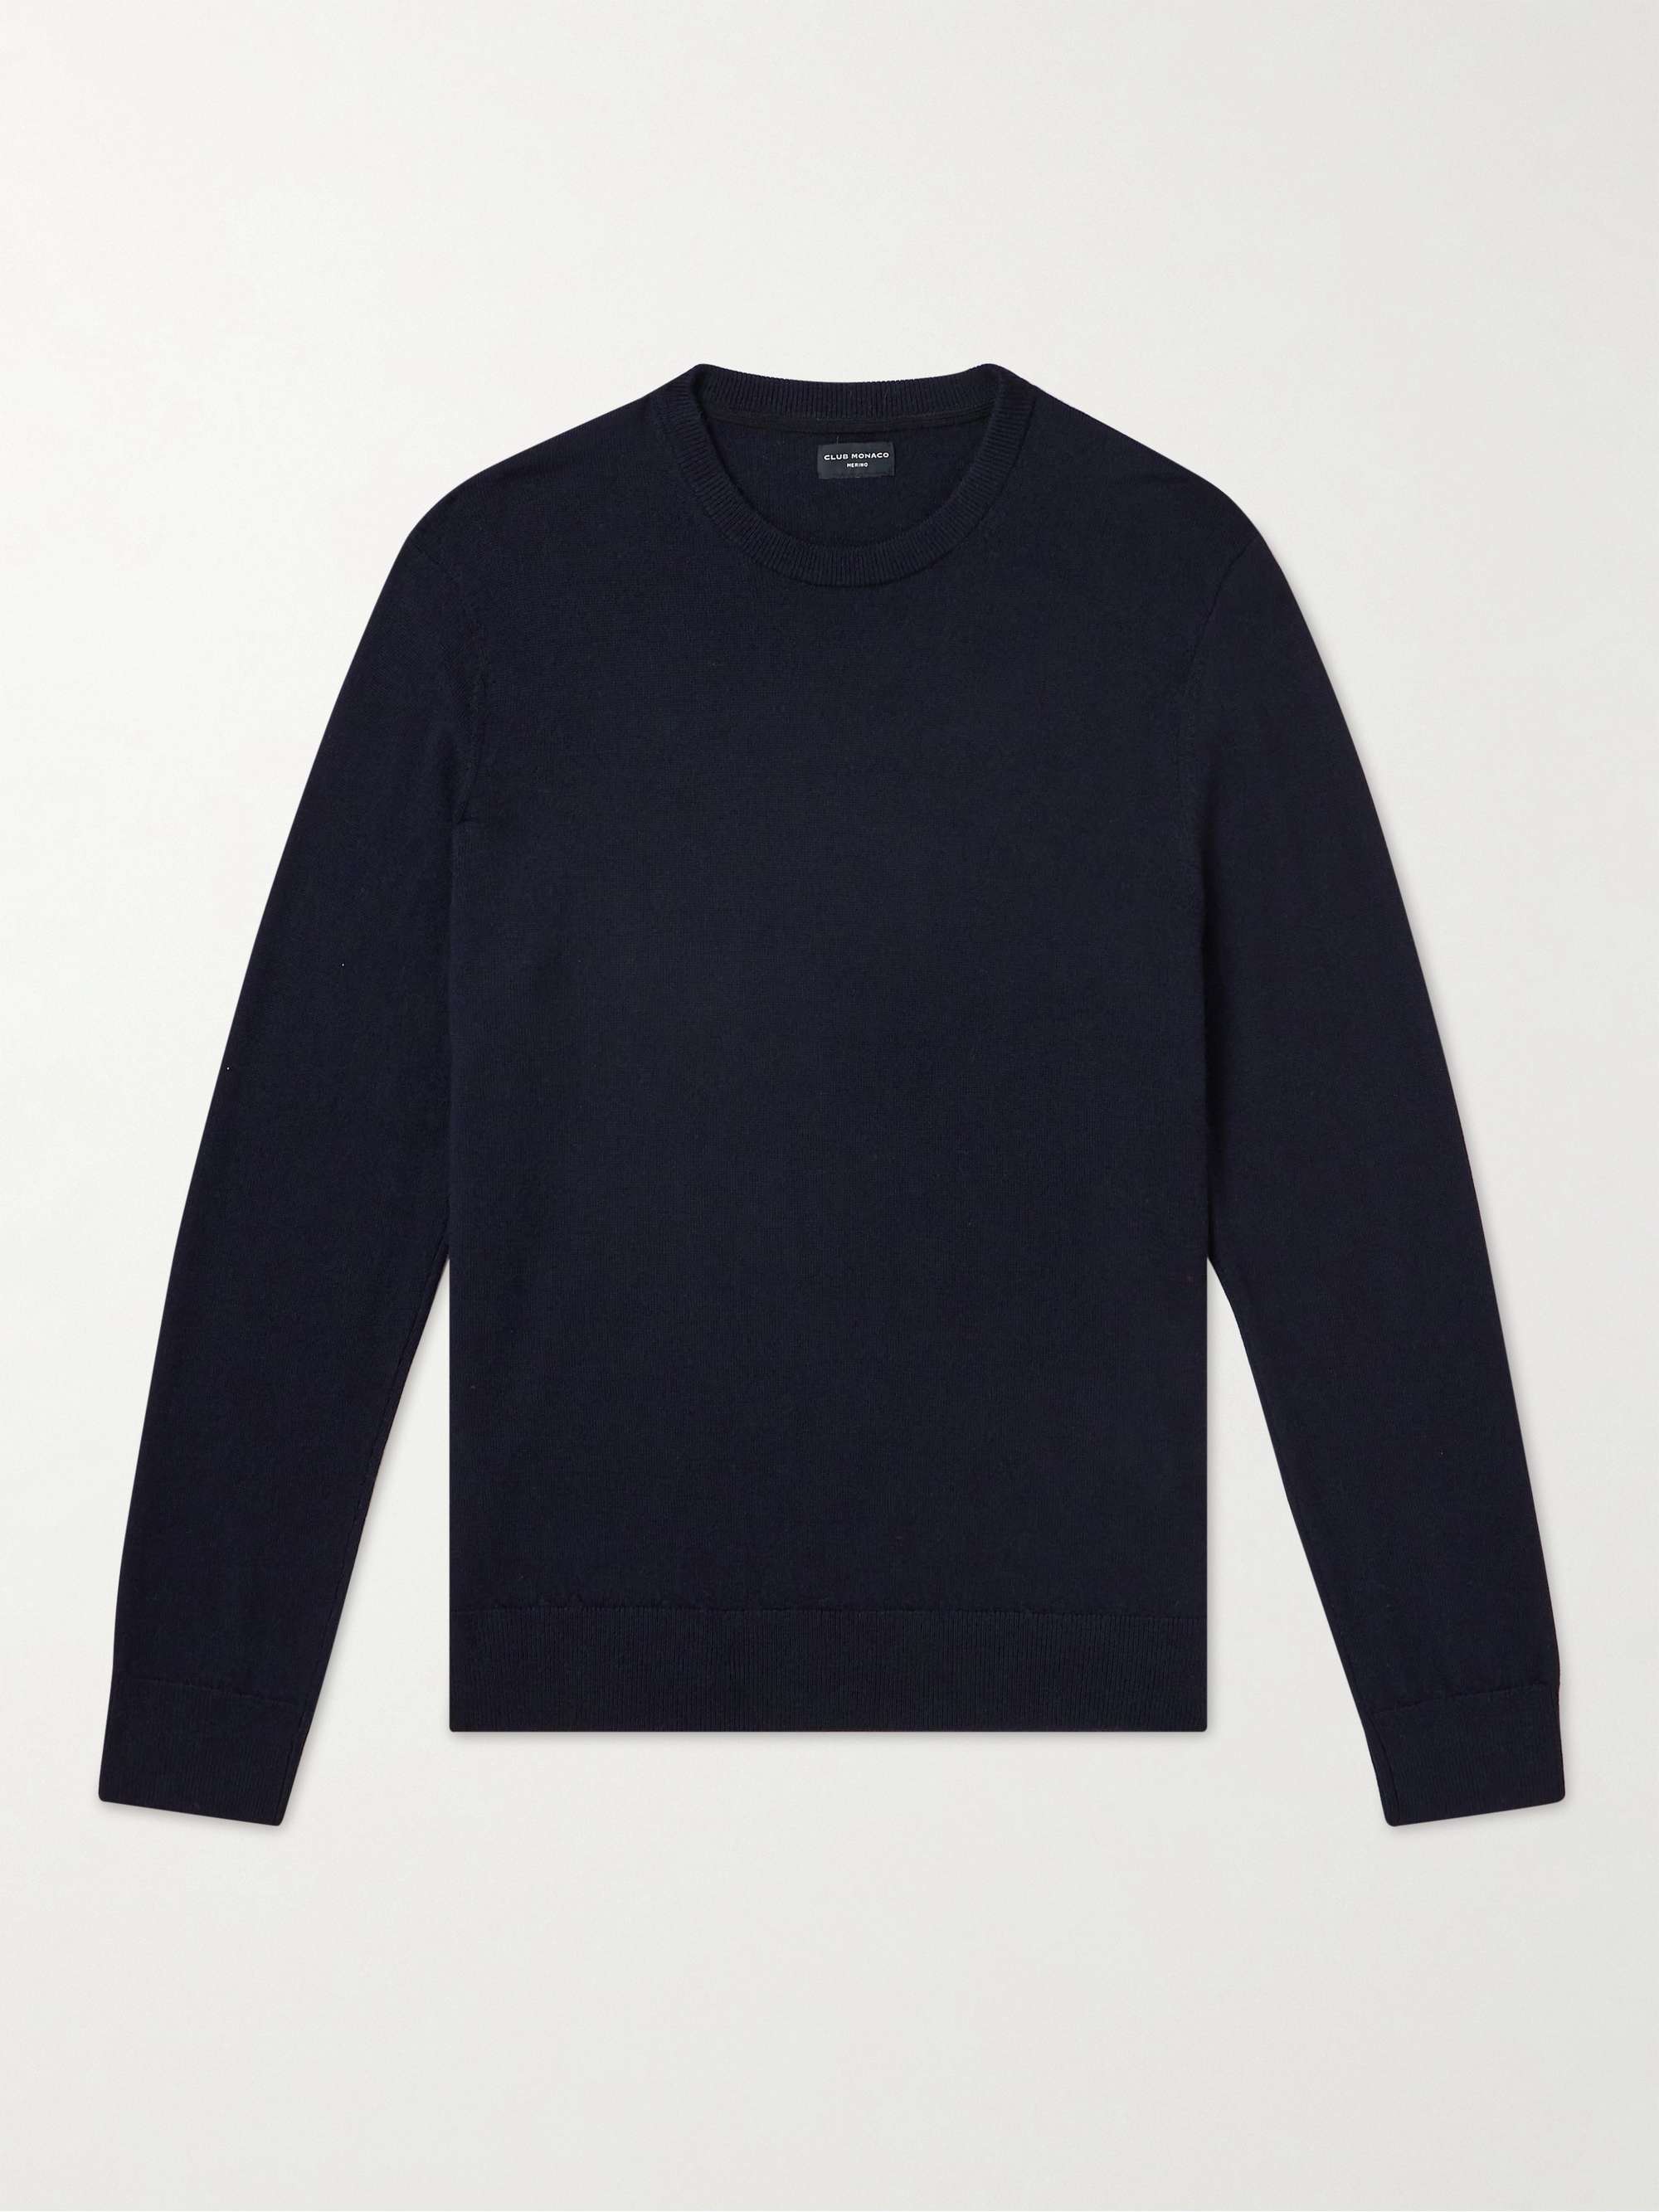 CLUB MONACO Cashmere Sweater for Men | MR PORTER